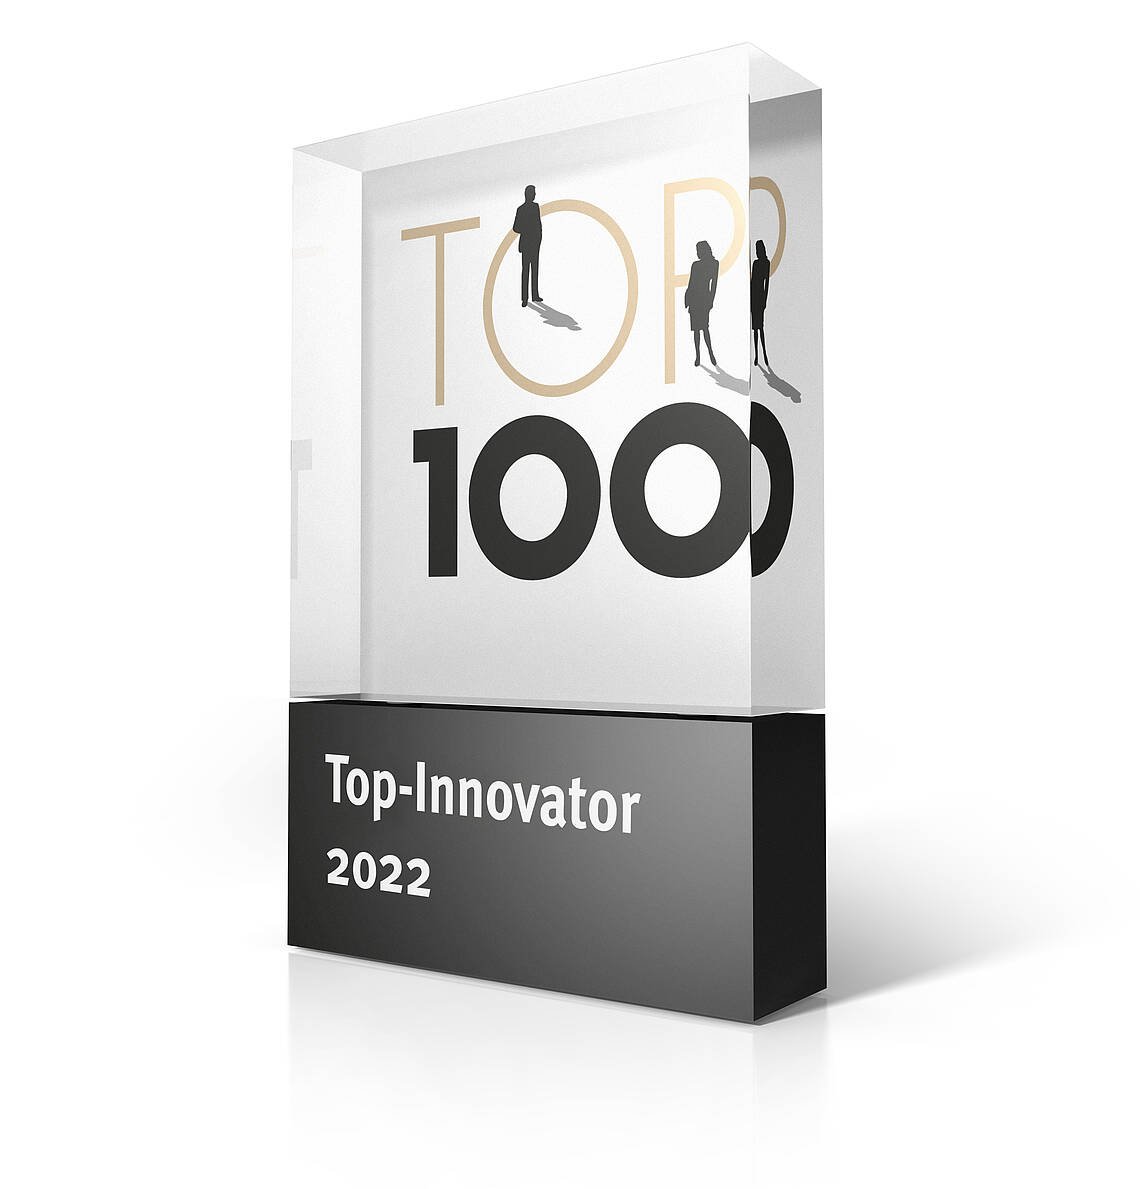 Top-Innovator im deutschen Mittelstand 2022 - Top 100